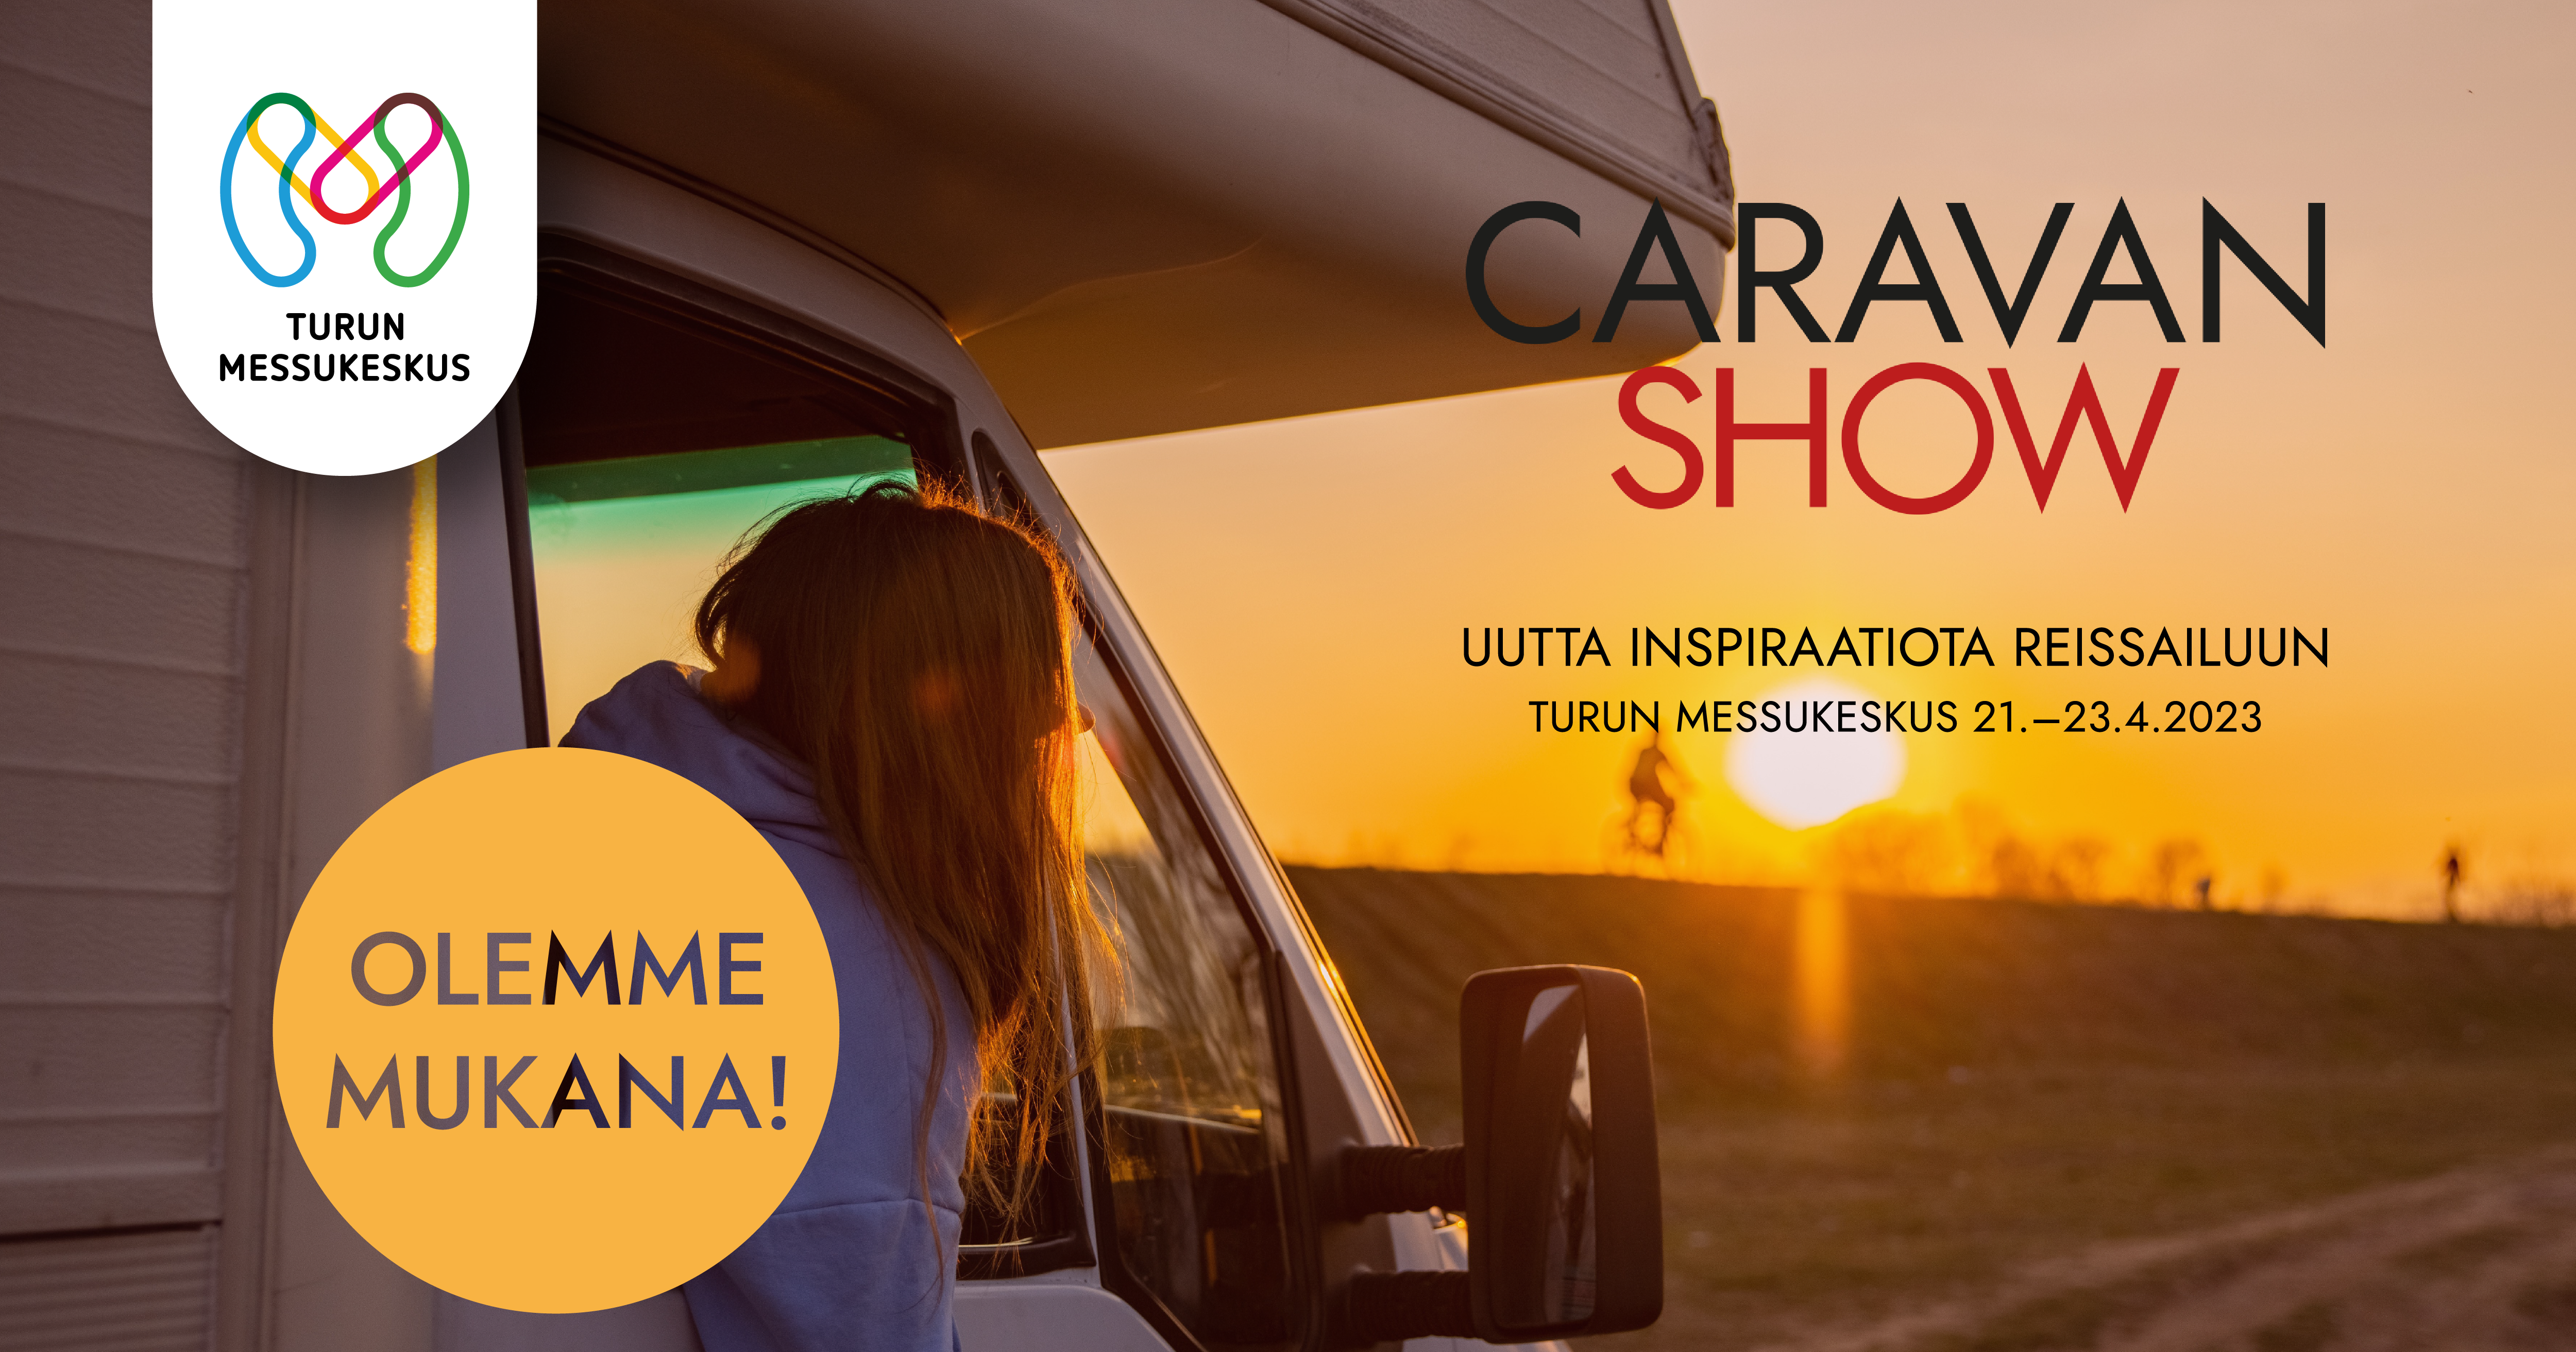 Turun Caravan Show 21.4 – 23.4.2023